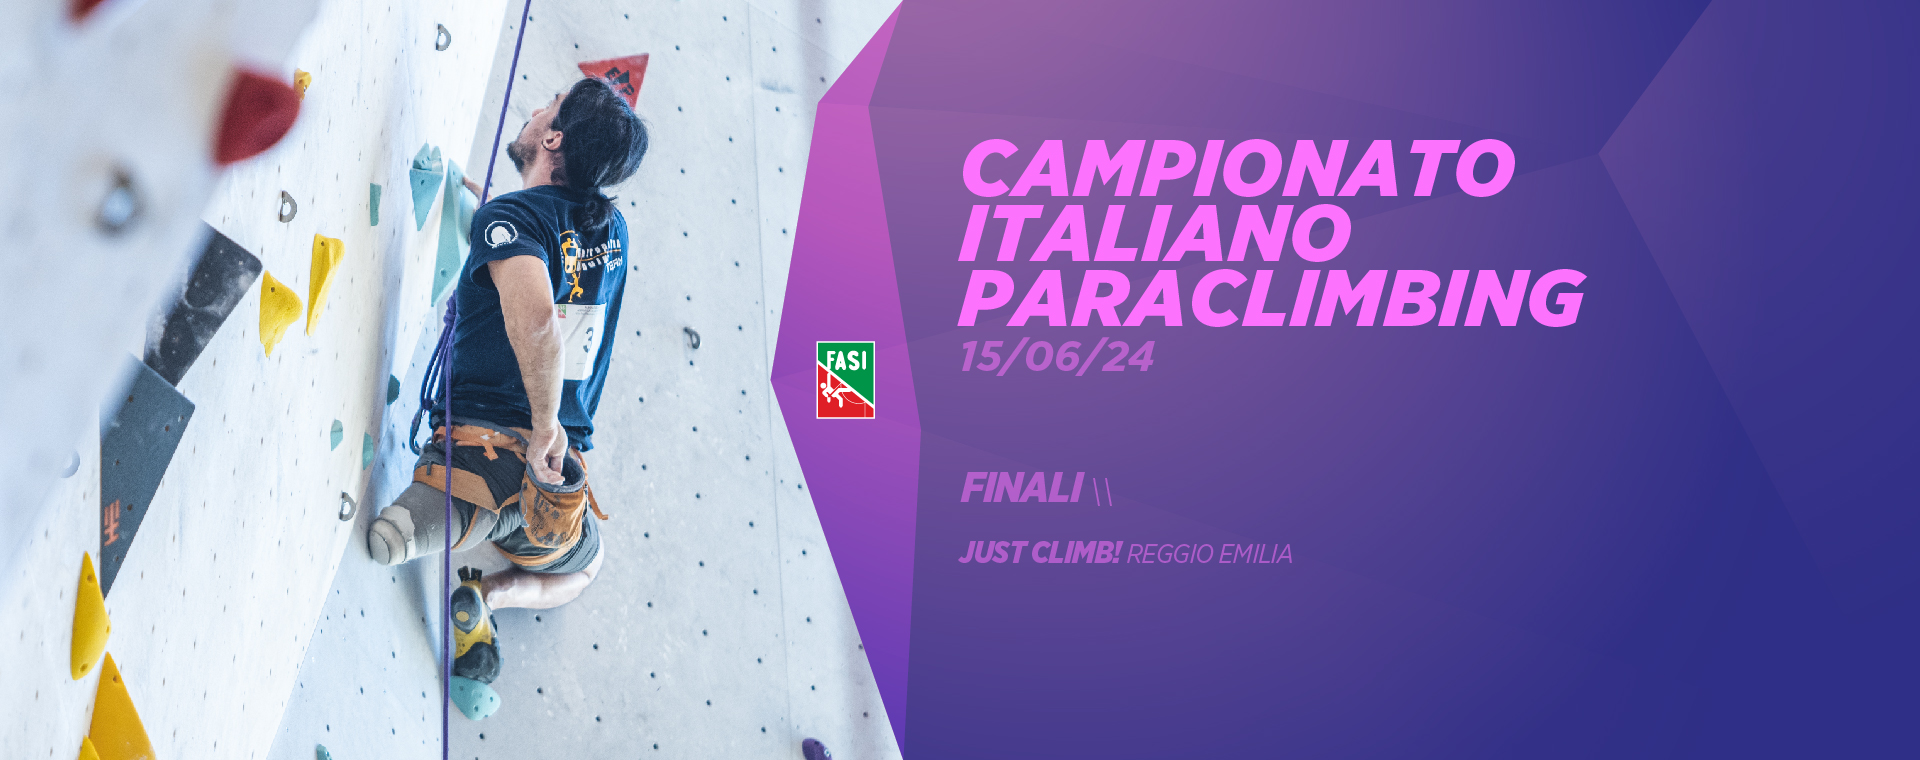 Campionato Italiano Paraclimbing - Finali